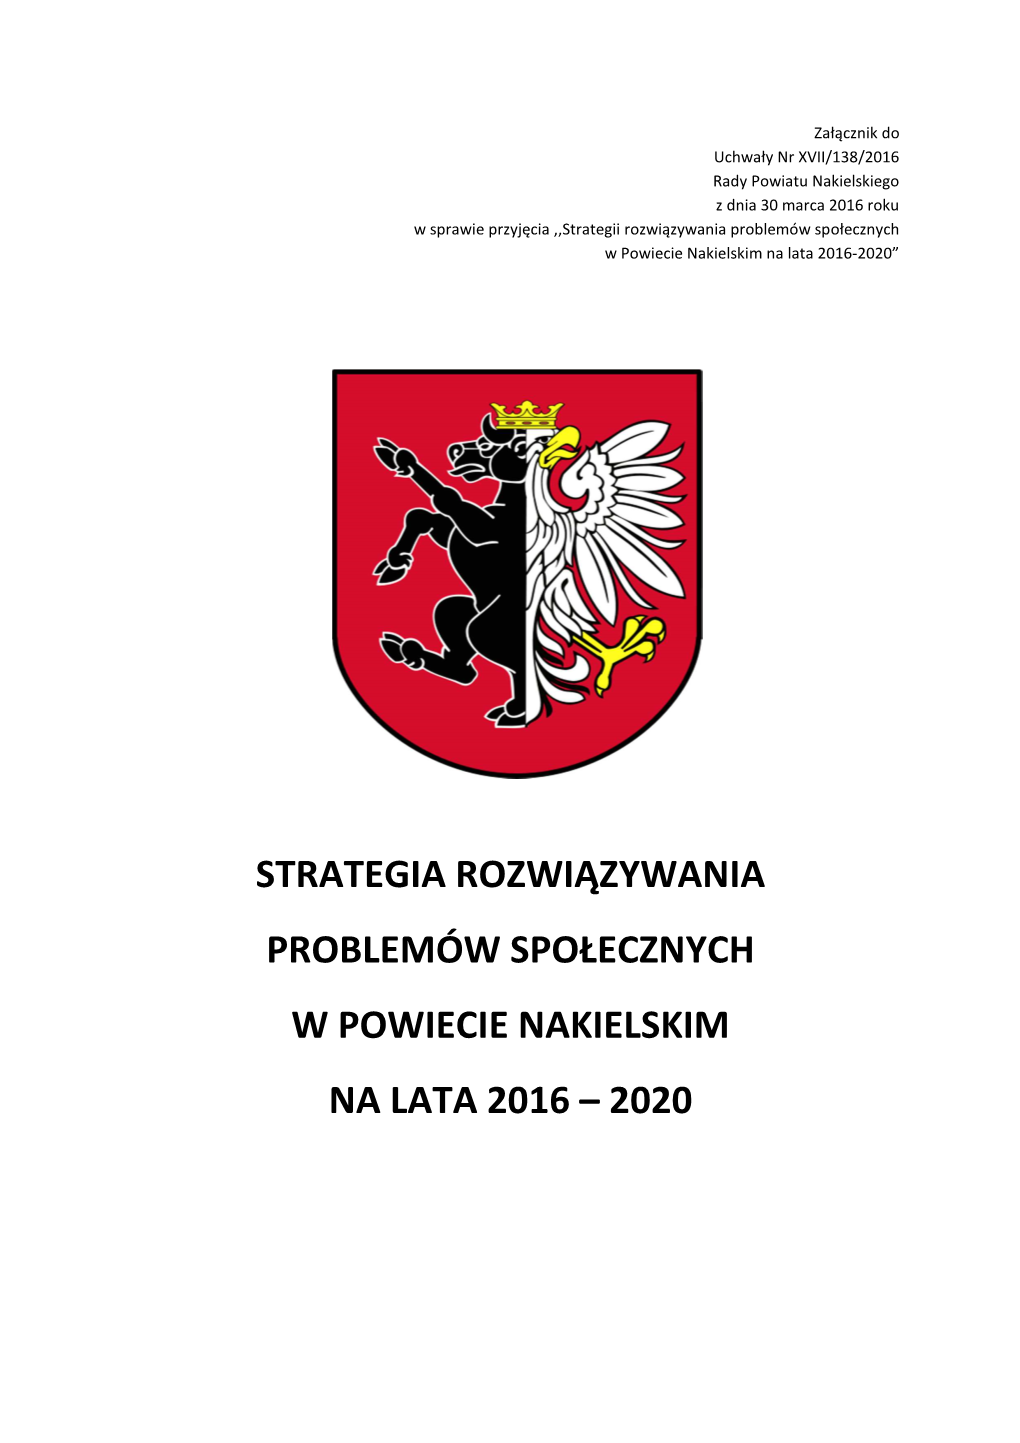 Strategia Rozwiązywania Problemów Społecznych W Powiecie Nakielskim Na Lata 2016 – 2020